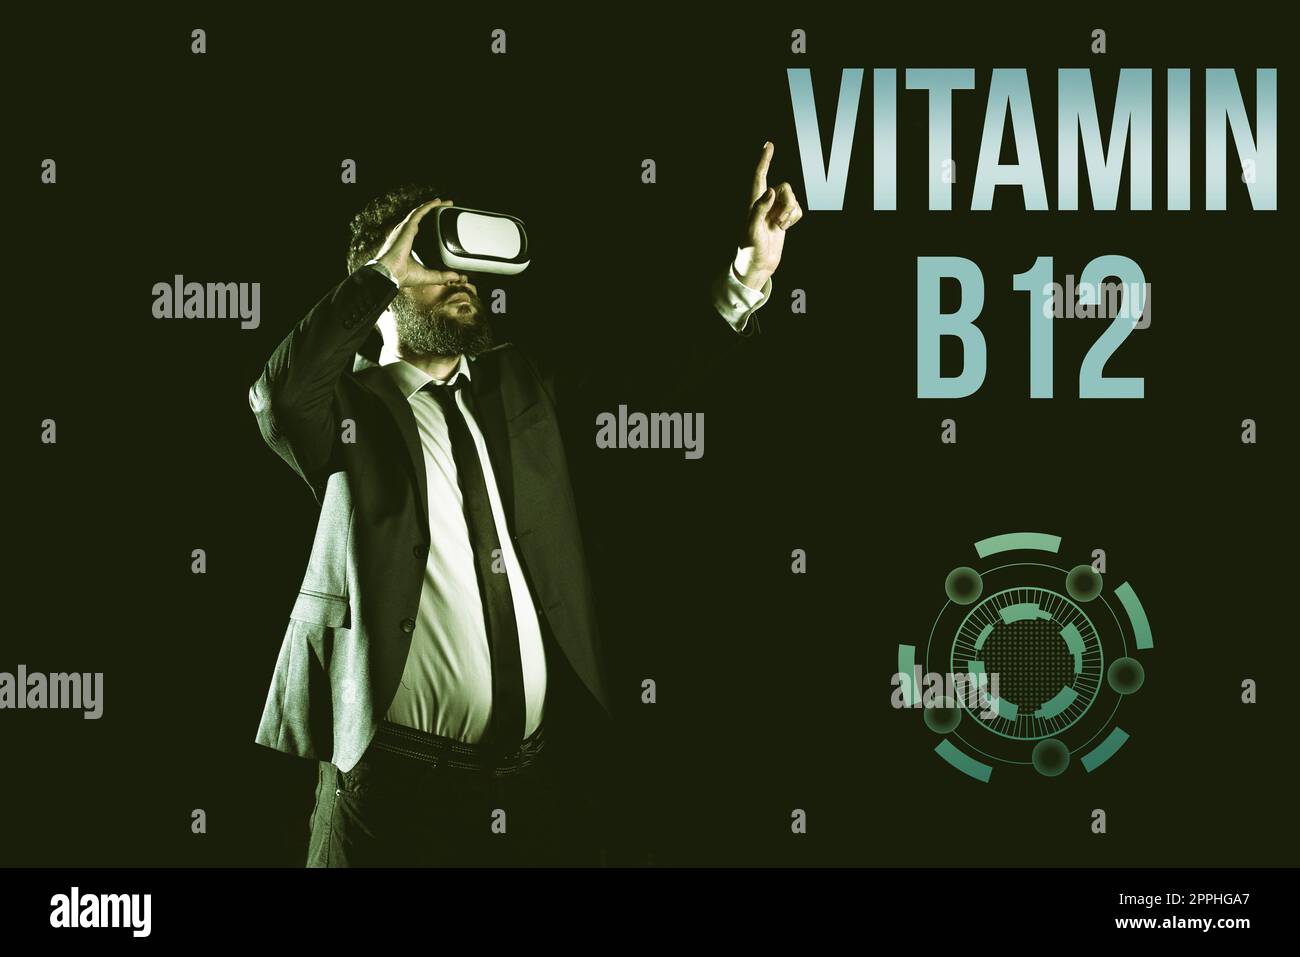 Texte montrant l'inspiration vitamine B12. Mot pour Groupe de substances essentielles au fonctionnement de certaines enzymes Banque D'Images